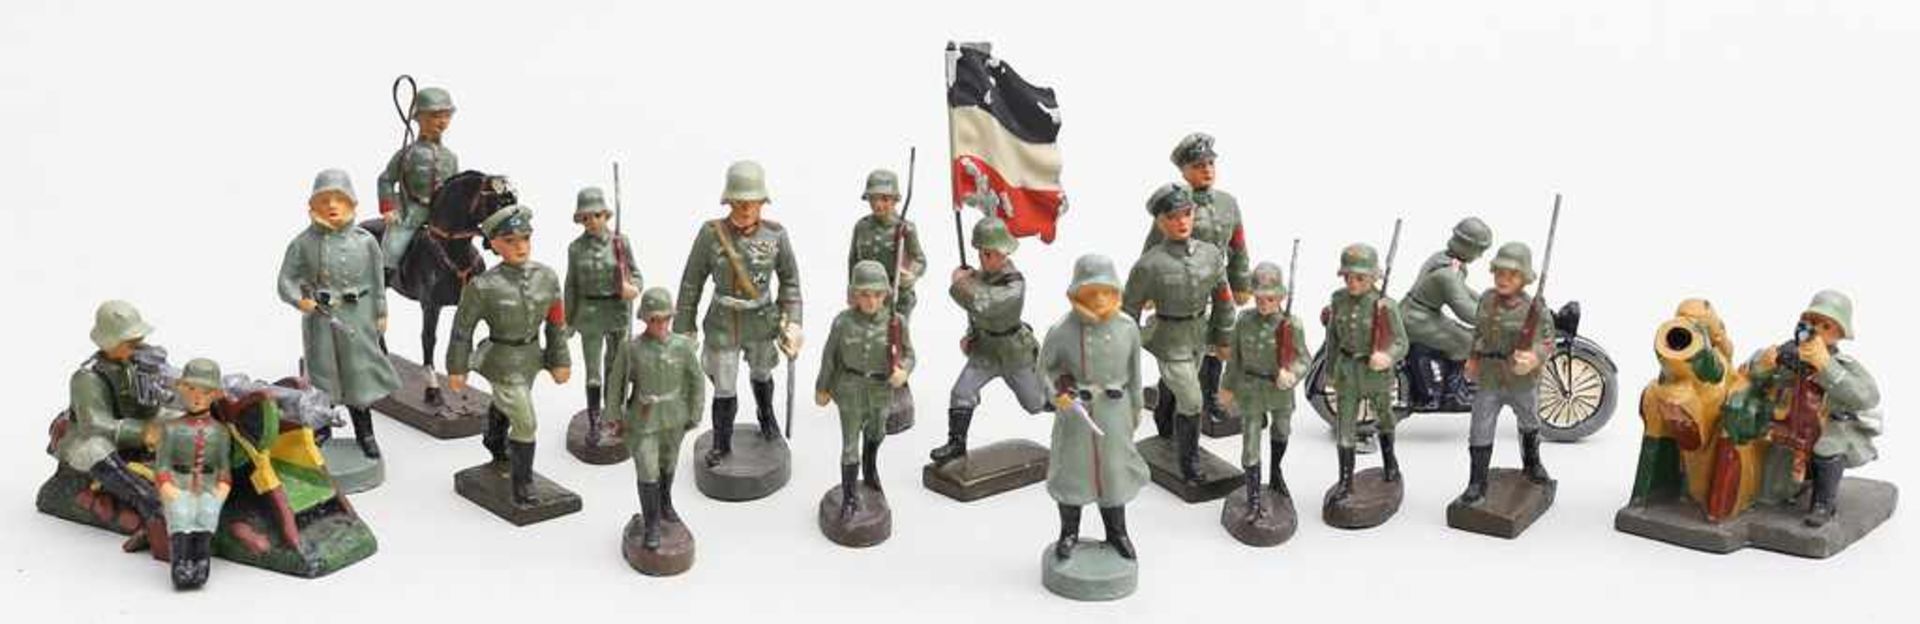 17 Massefiguren: Soldaten Deutsche Wehrmacht.Verschiedene Ausführungen und Größen. Überwiegend